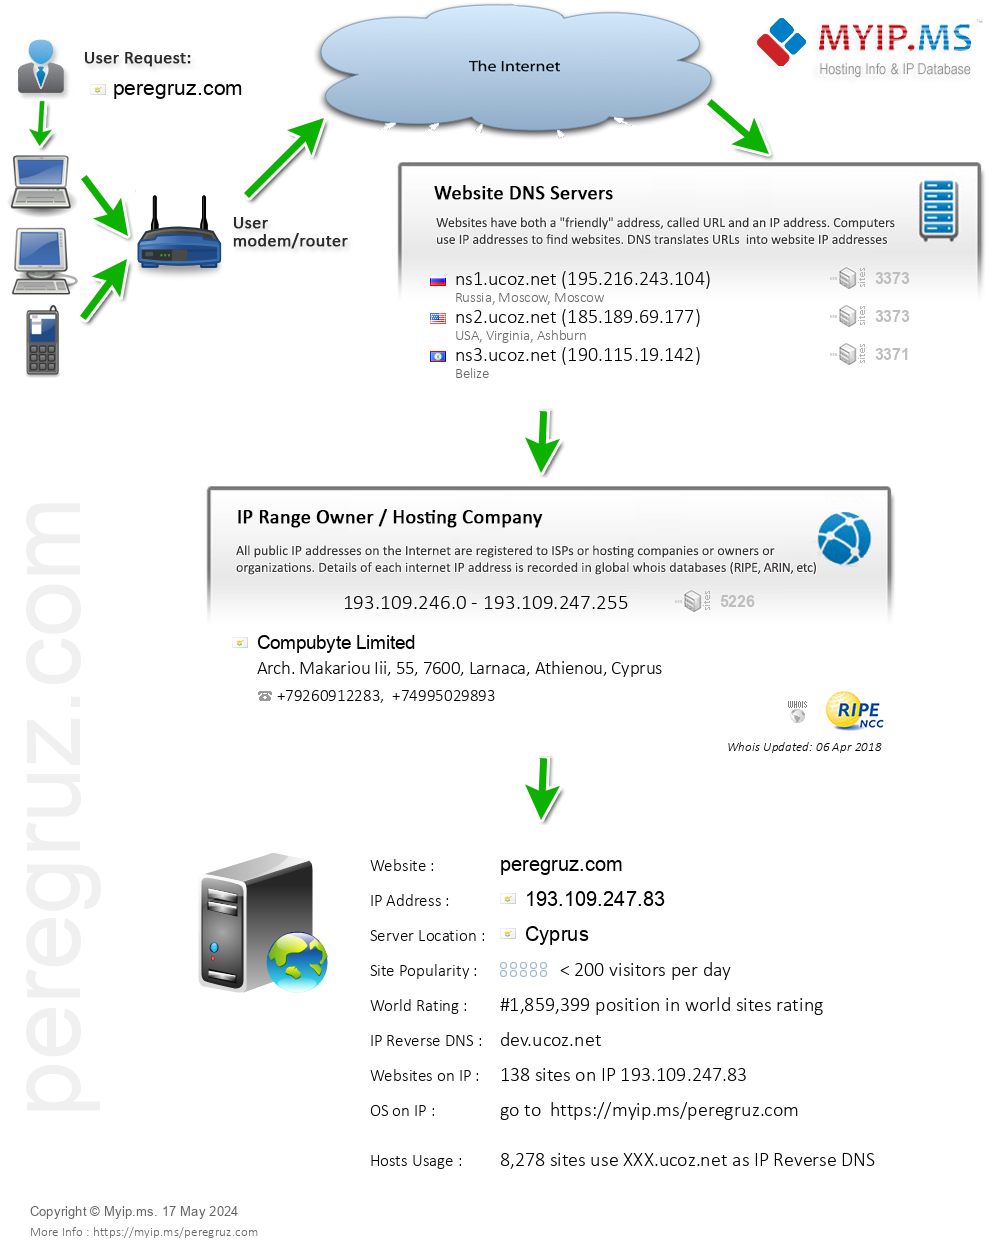 Peregruz.com - Website Hosting Visual IP Diagram